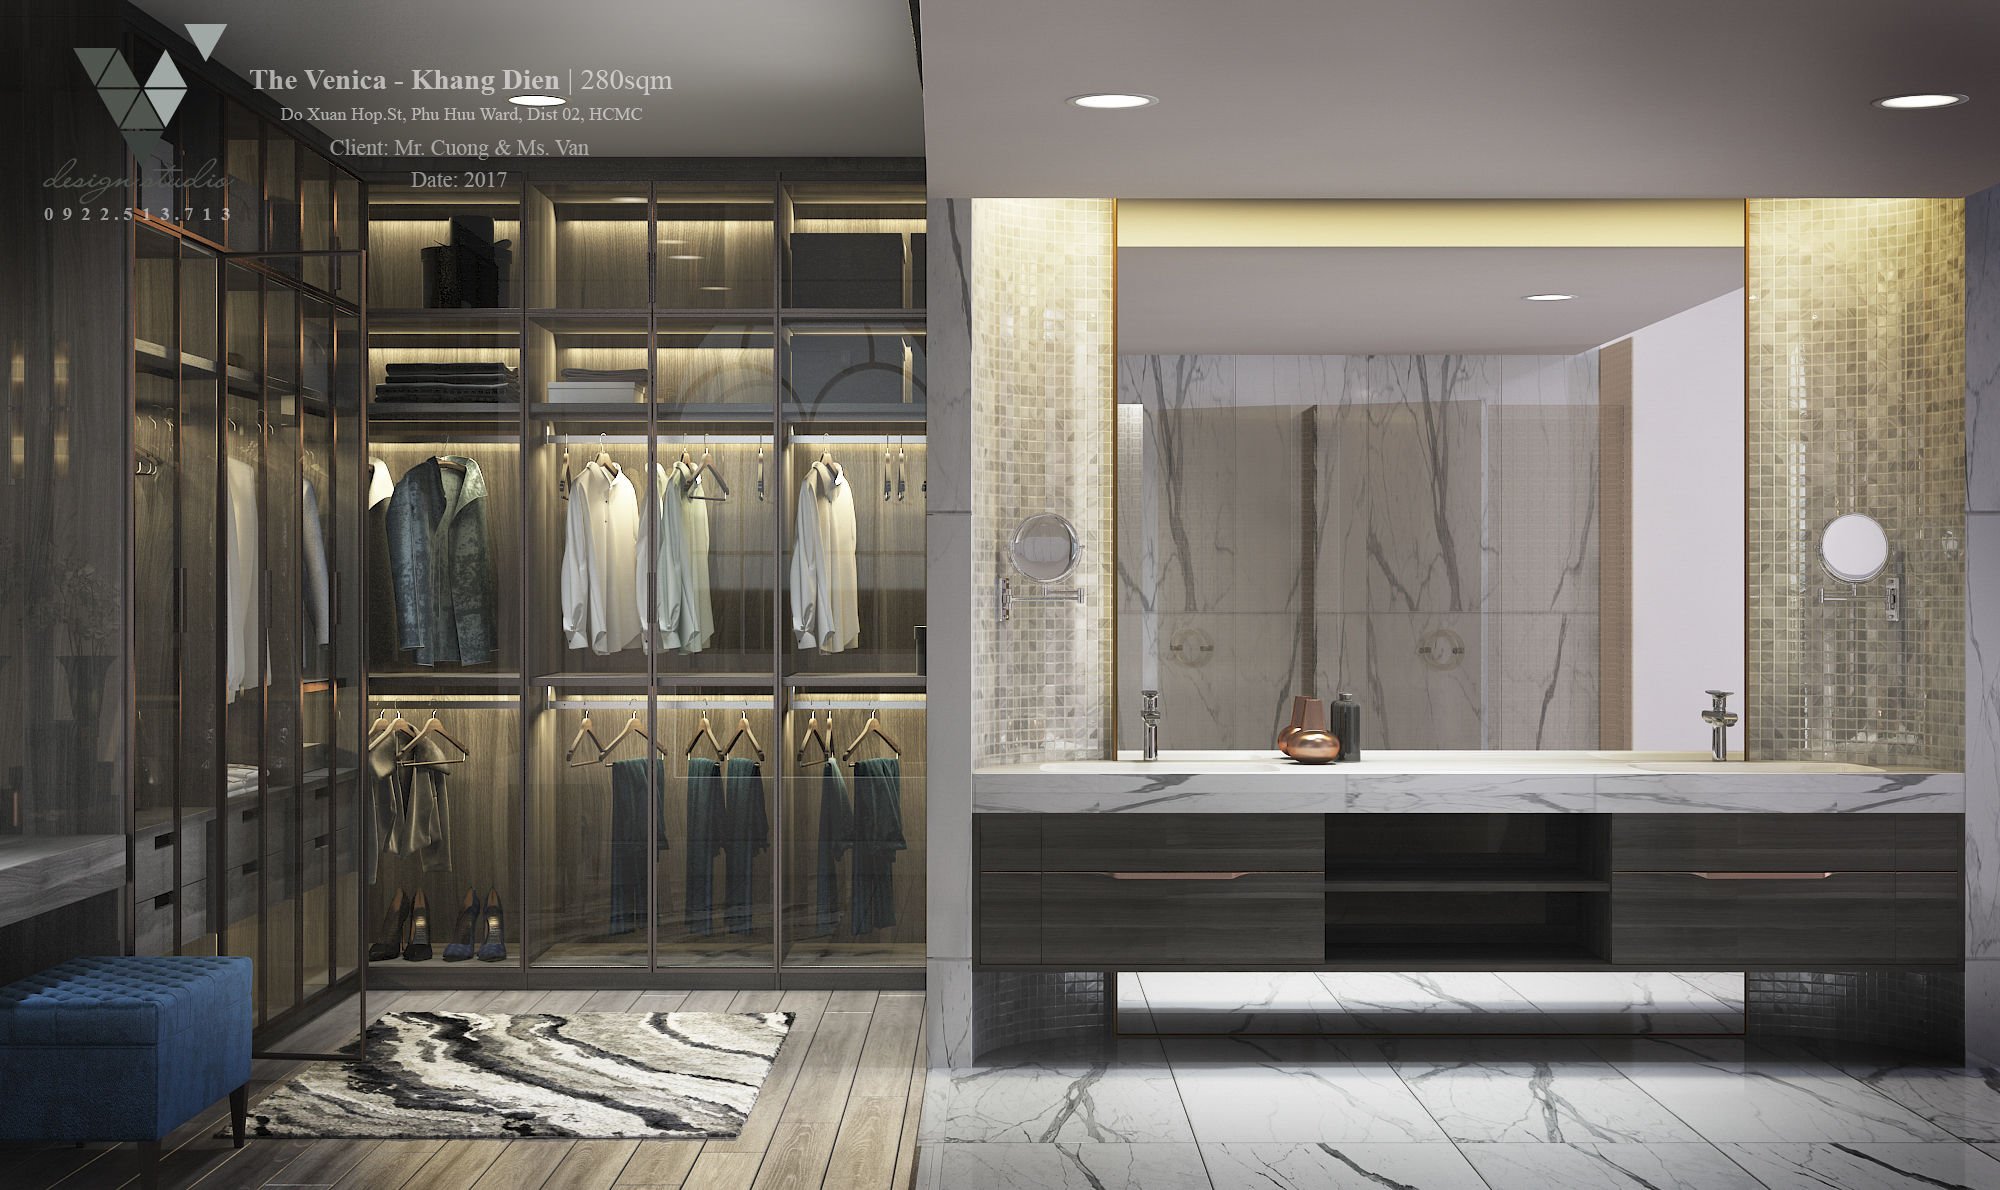 Phòng tắm căn hộ được thiết kế hiện đại dự án The Venica